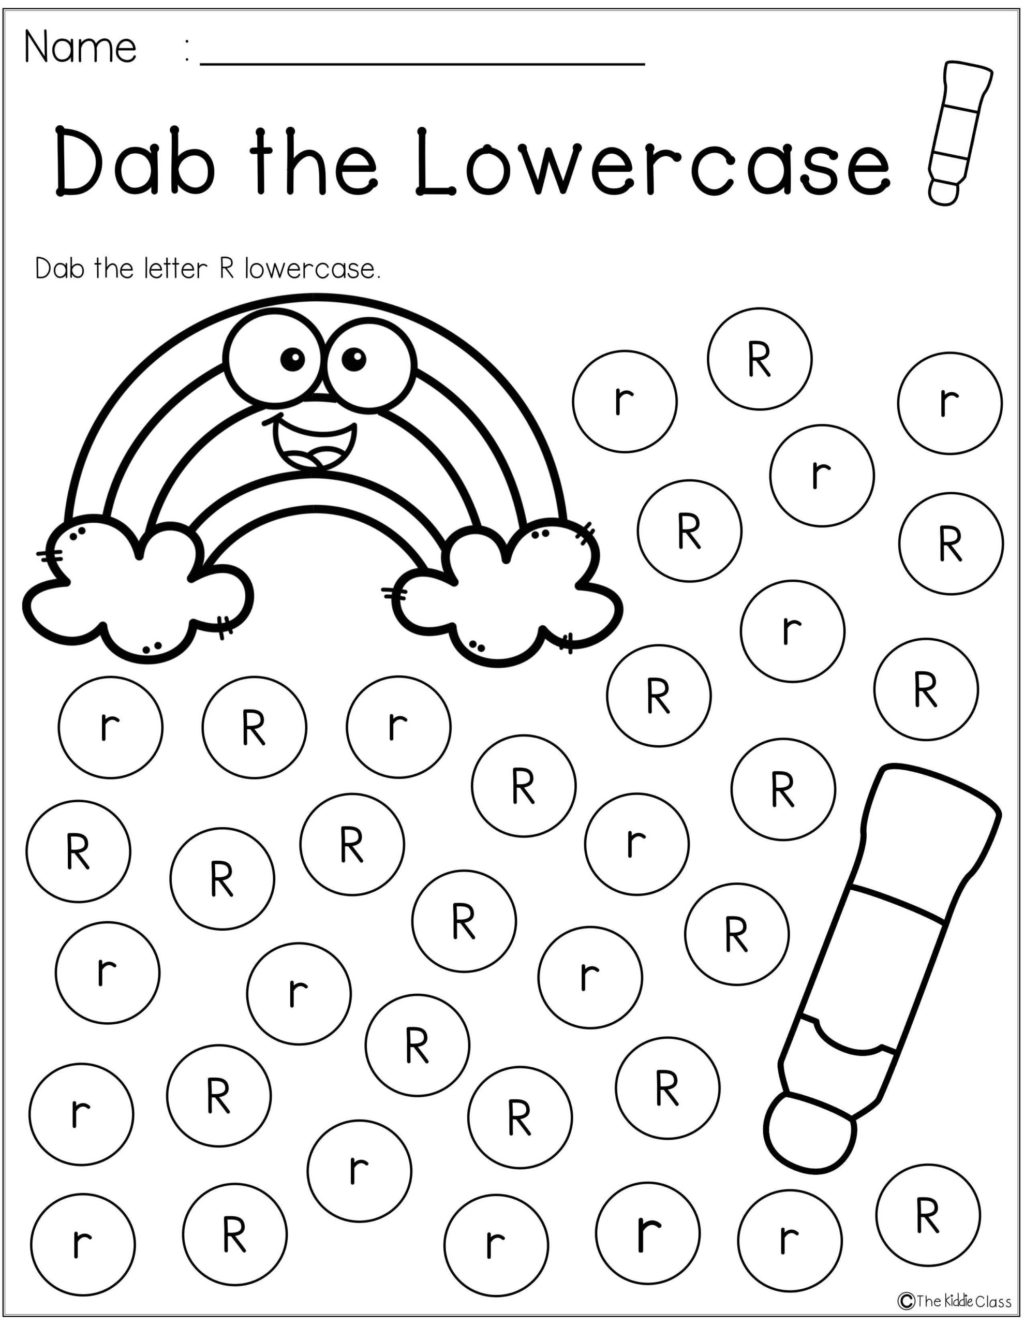 Worksheet ~ Printable Preschool Alphabet Worksheetster with regard to Letter R Worksheets Free Printable